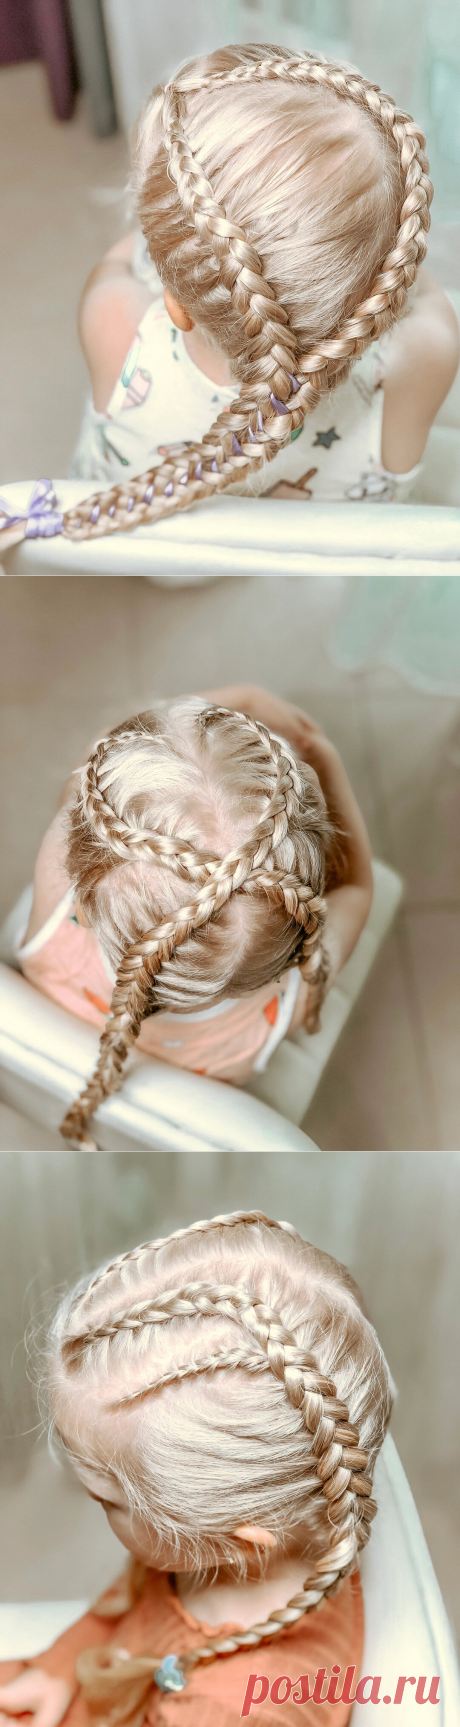 Прически на длинные волосы своими руками | LittleMods | Яндекс Дзен